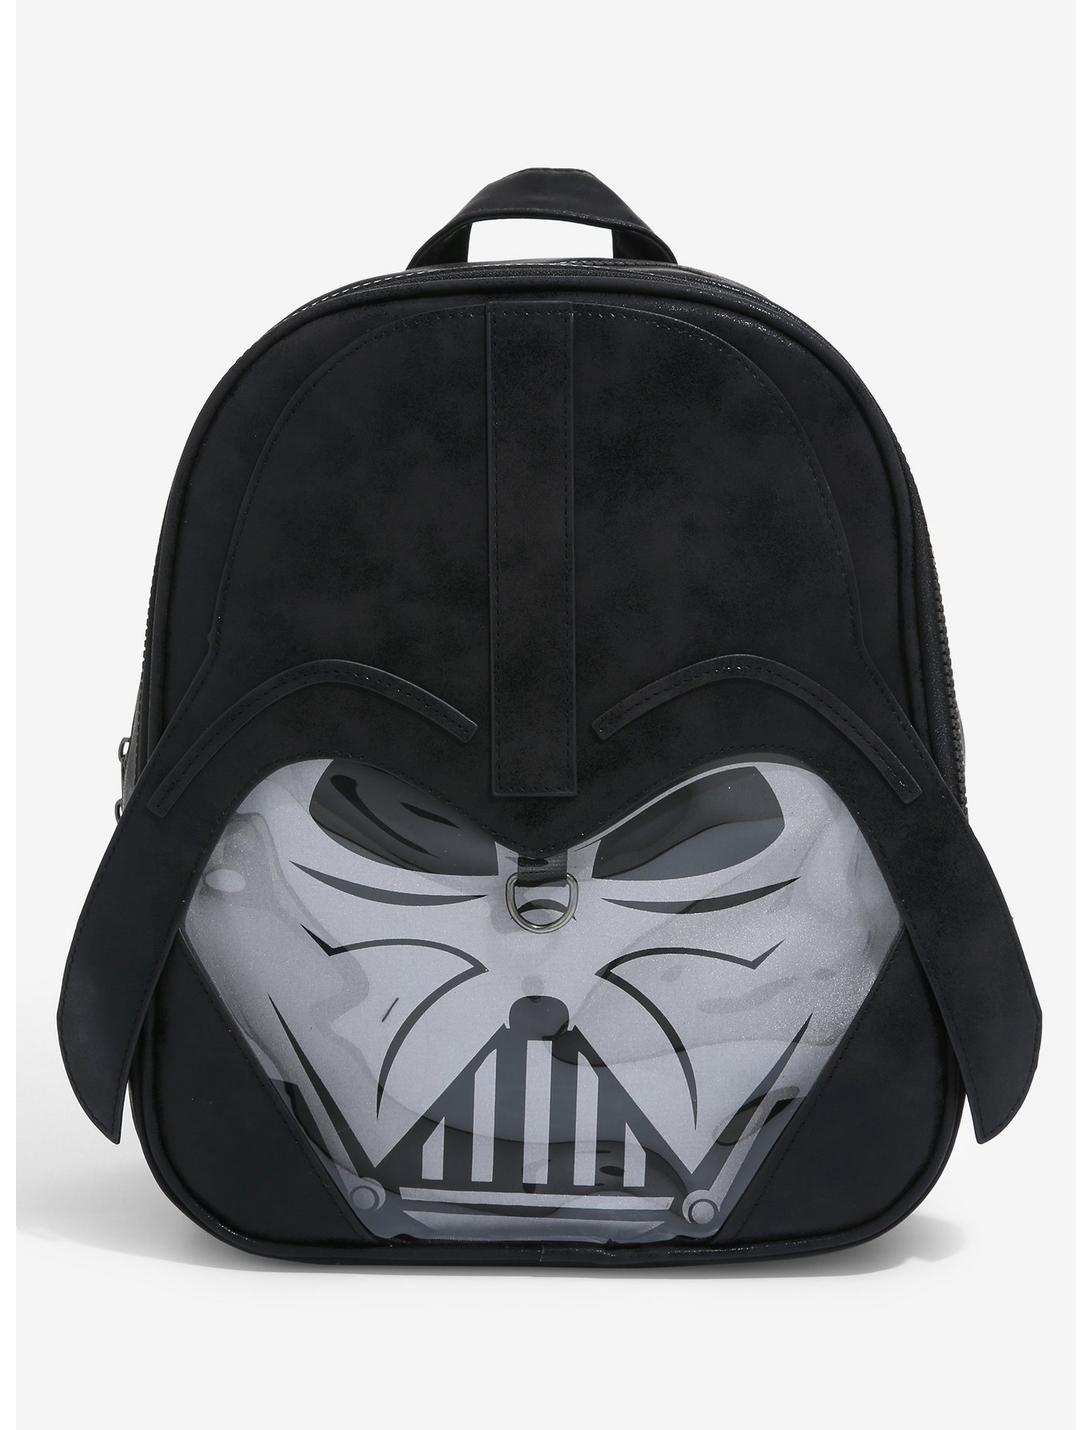 New Star Wars Darth Vader Back Pack Book Bag 